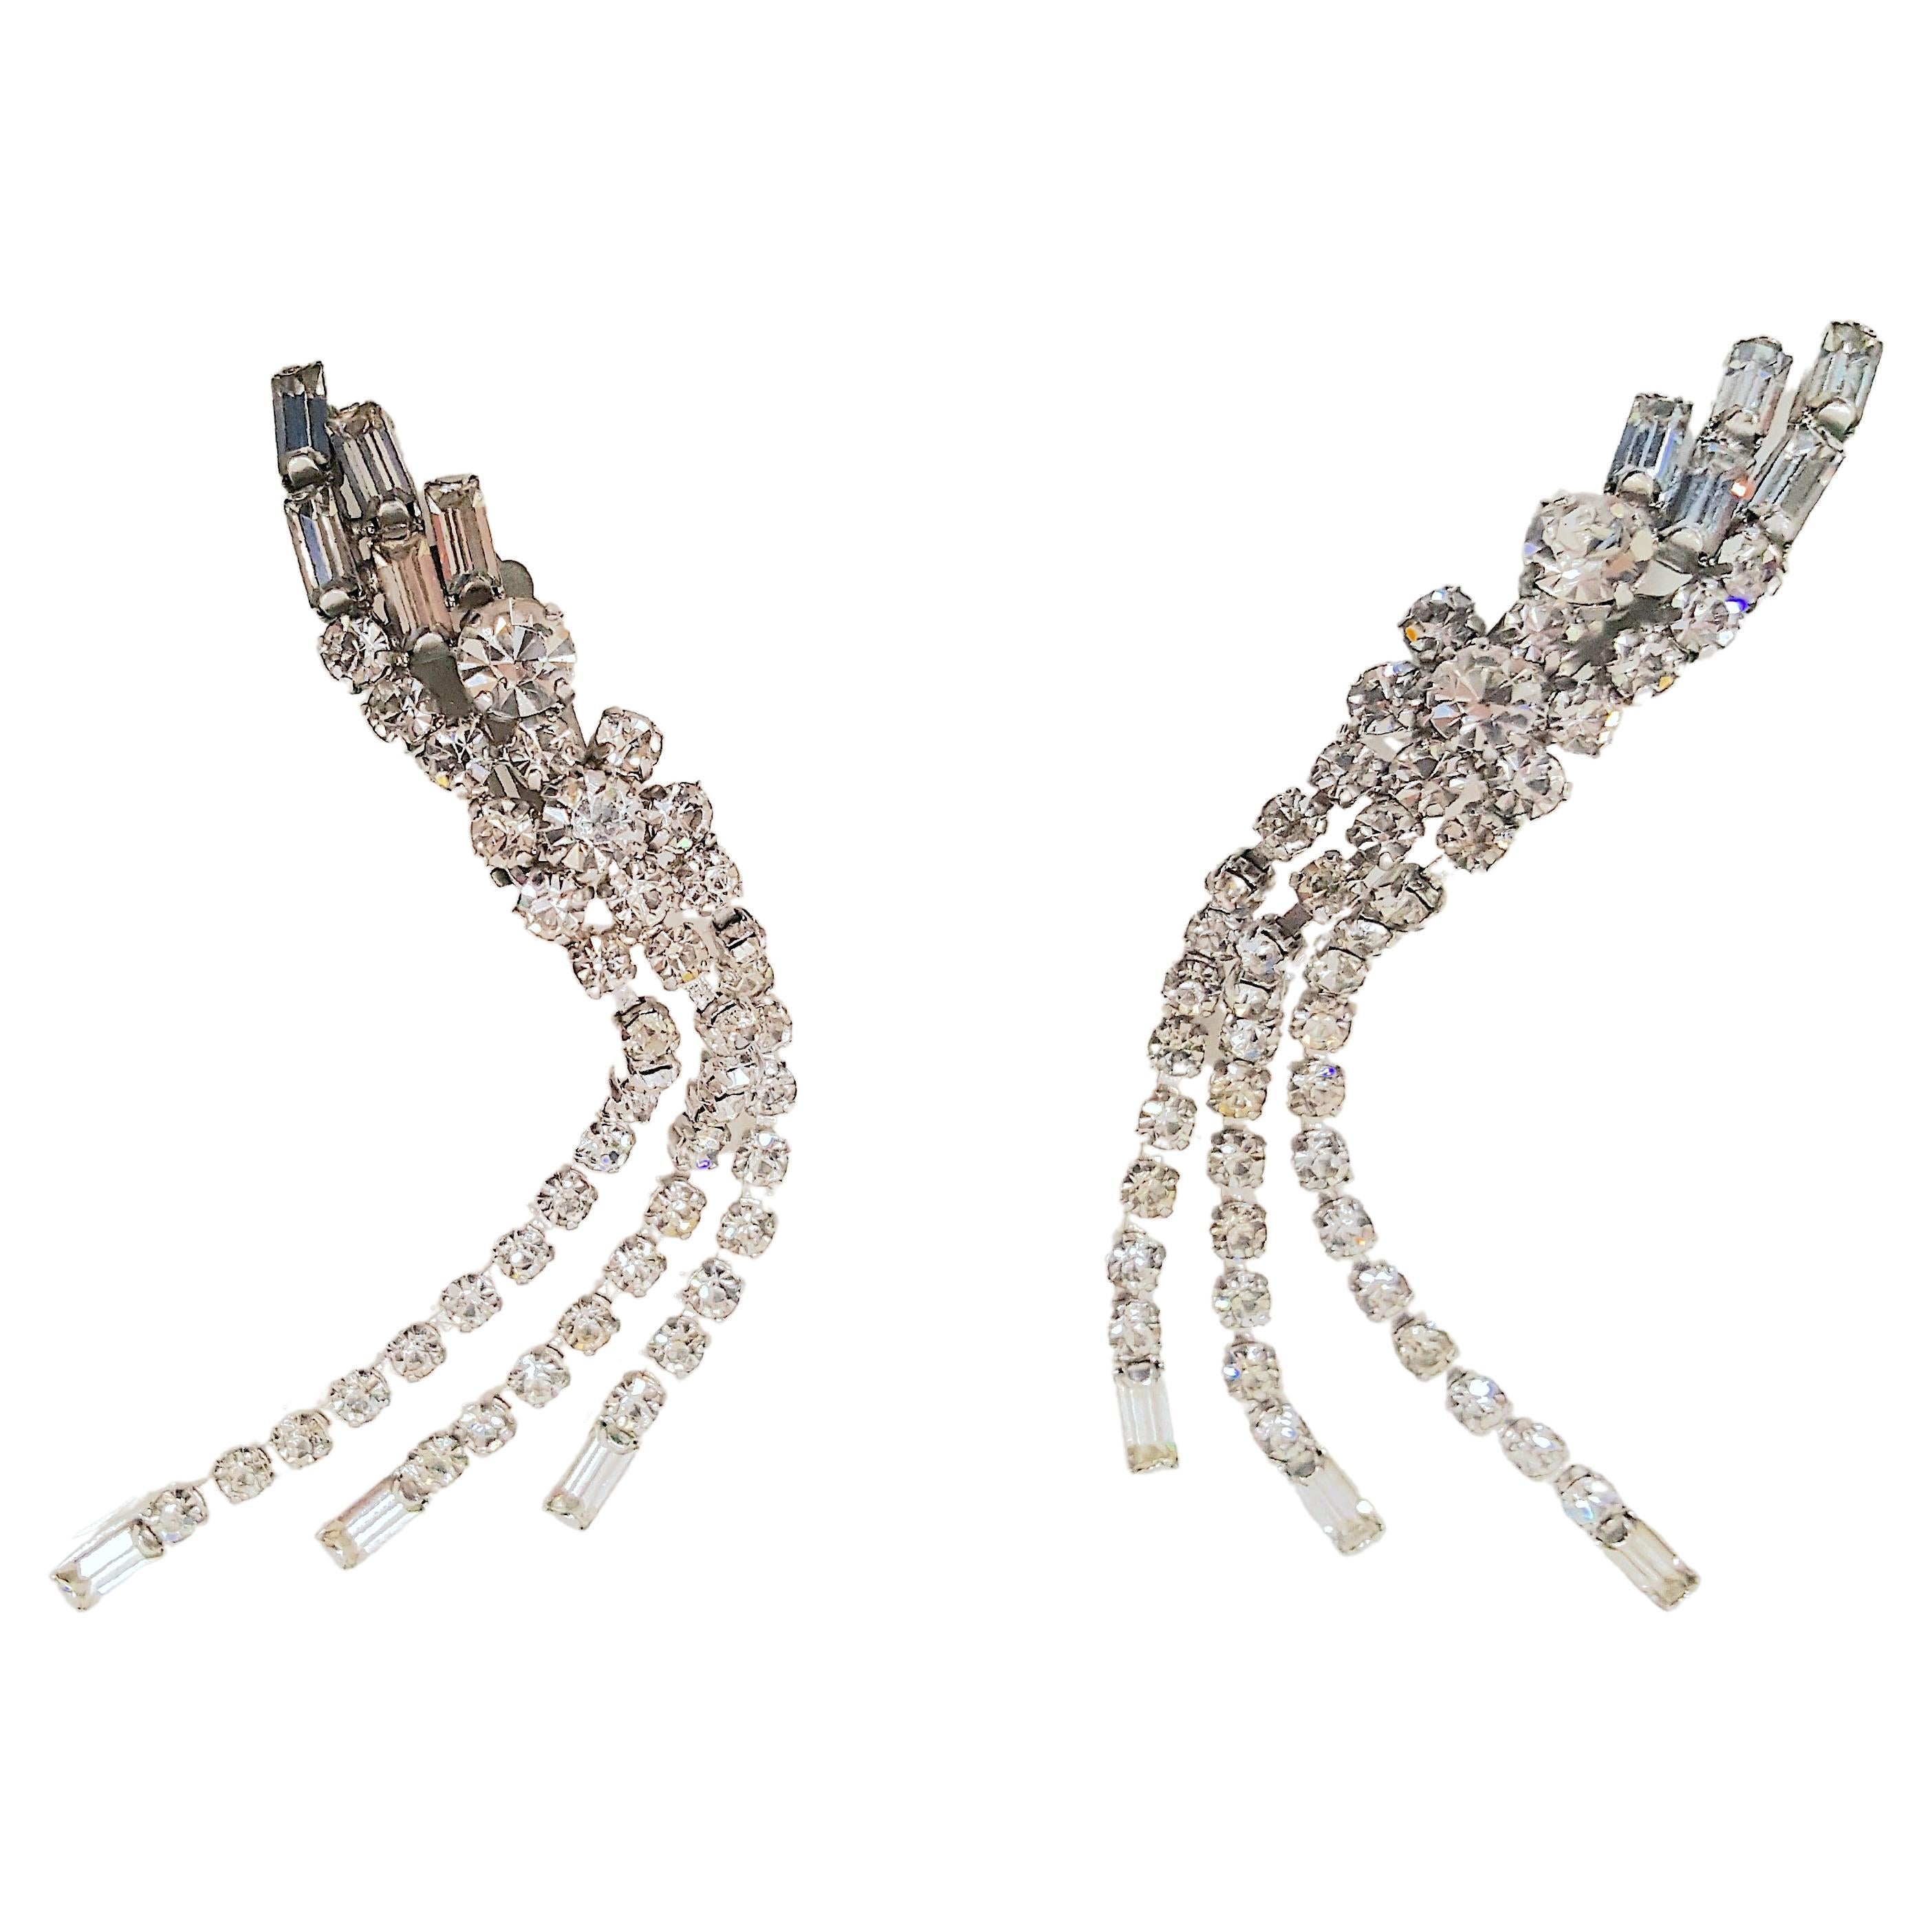 Alors qu'il fabriquait des bijoux fantaisie haute-couture similaires pour Christian Dior au milieu du siècle dernier, le designer Max Muller, établi près de Kaufbeuren, dans l'ouest de l'Allemagne, a créé ces boucles d'oreilles pendantes en cristal